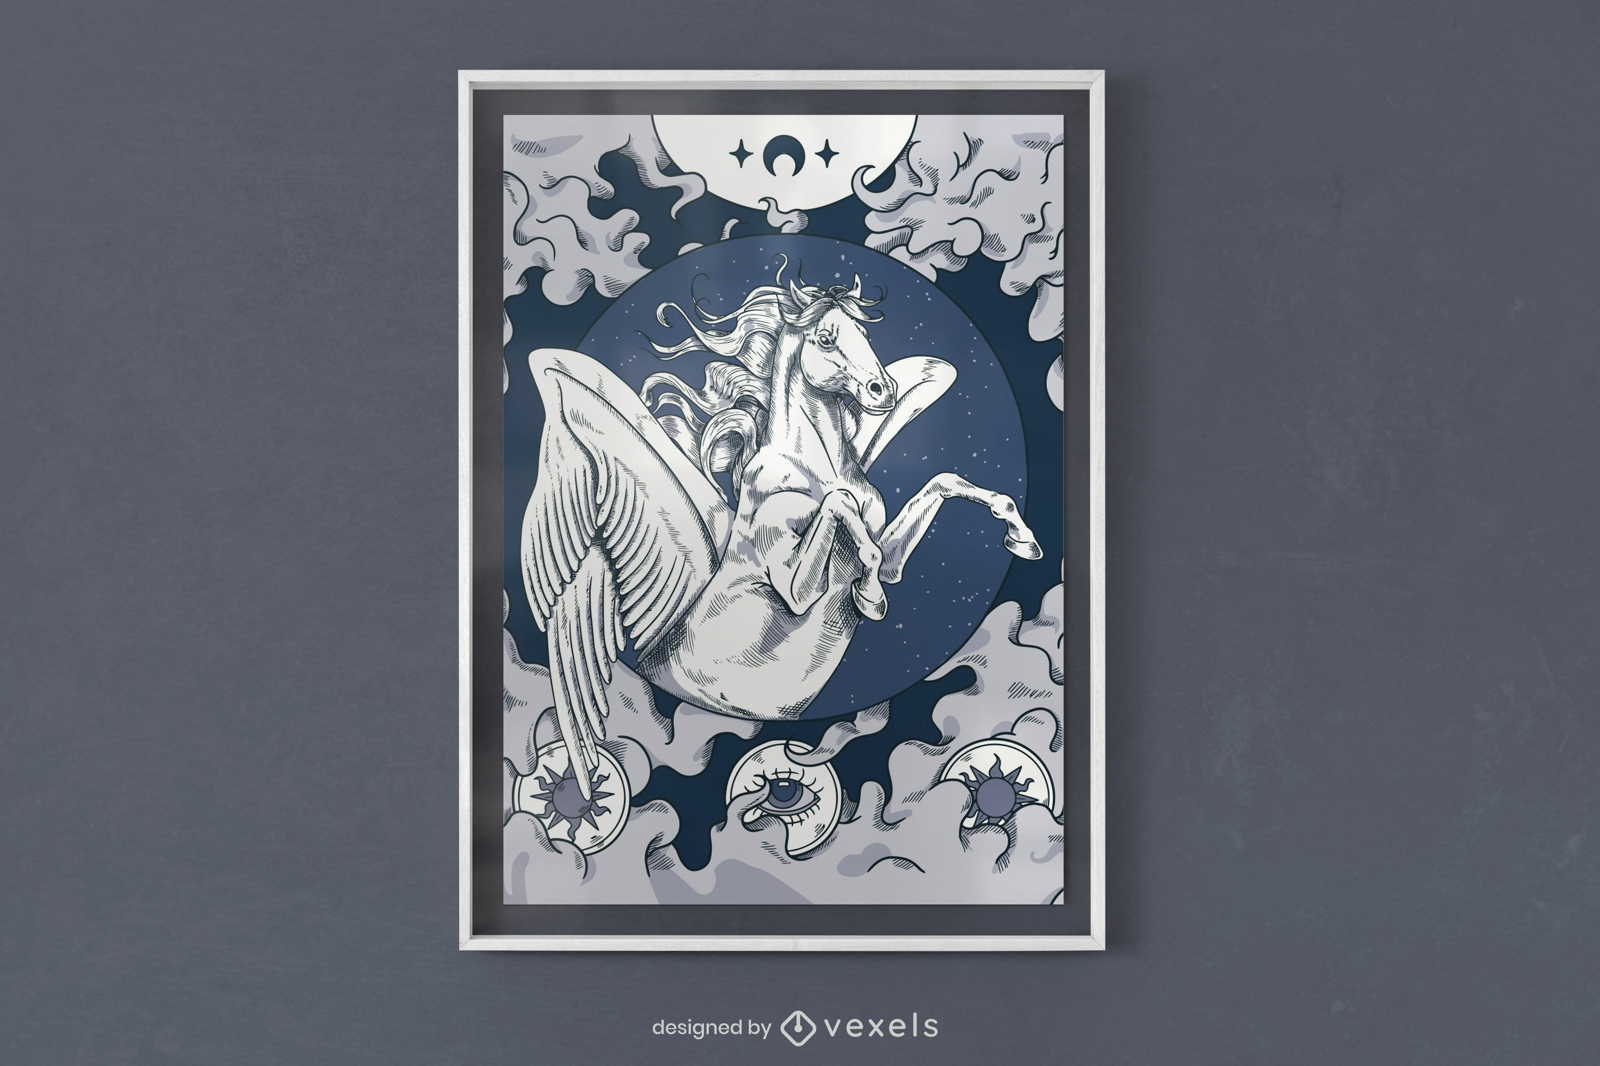 Himmlisches Plakatdesign für weiße Pferde